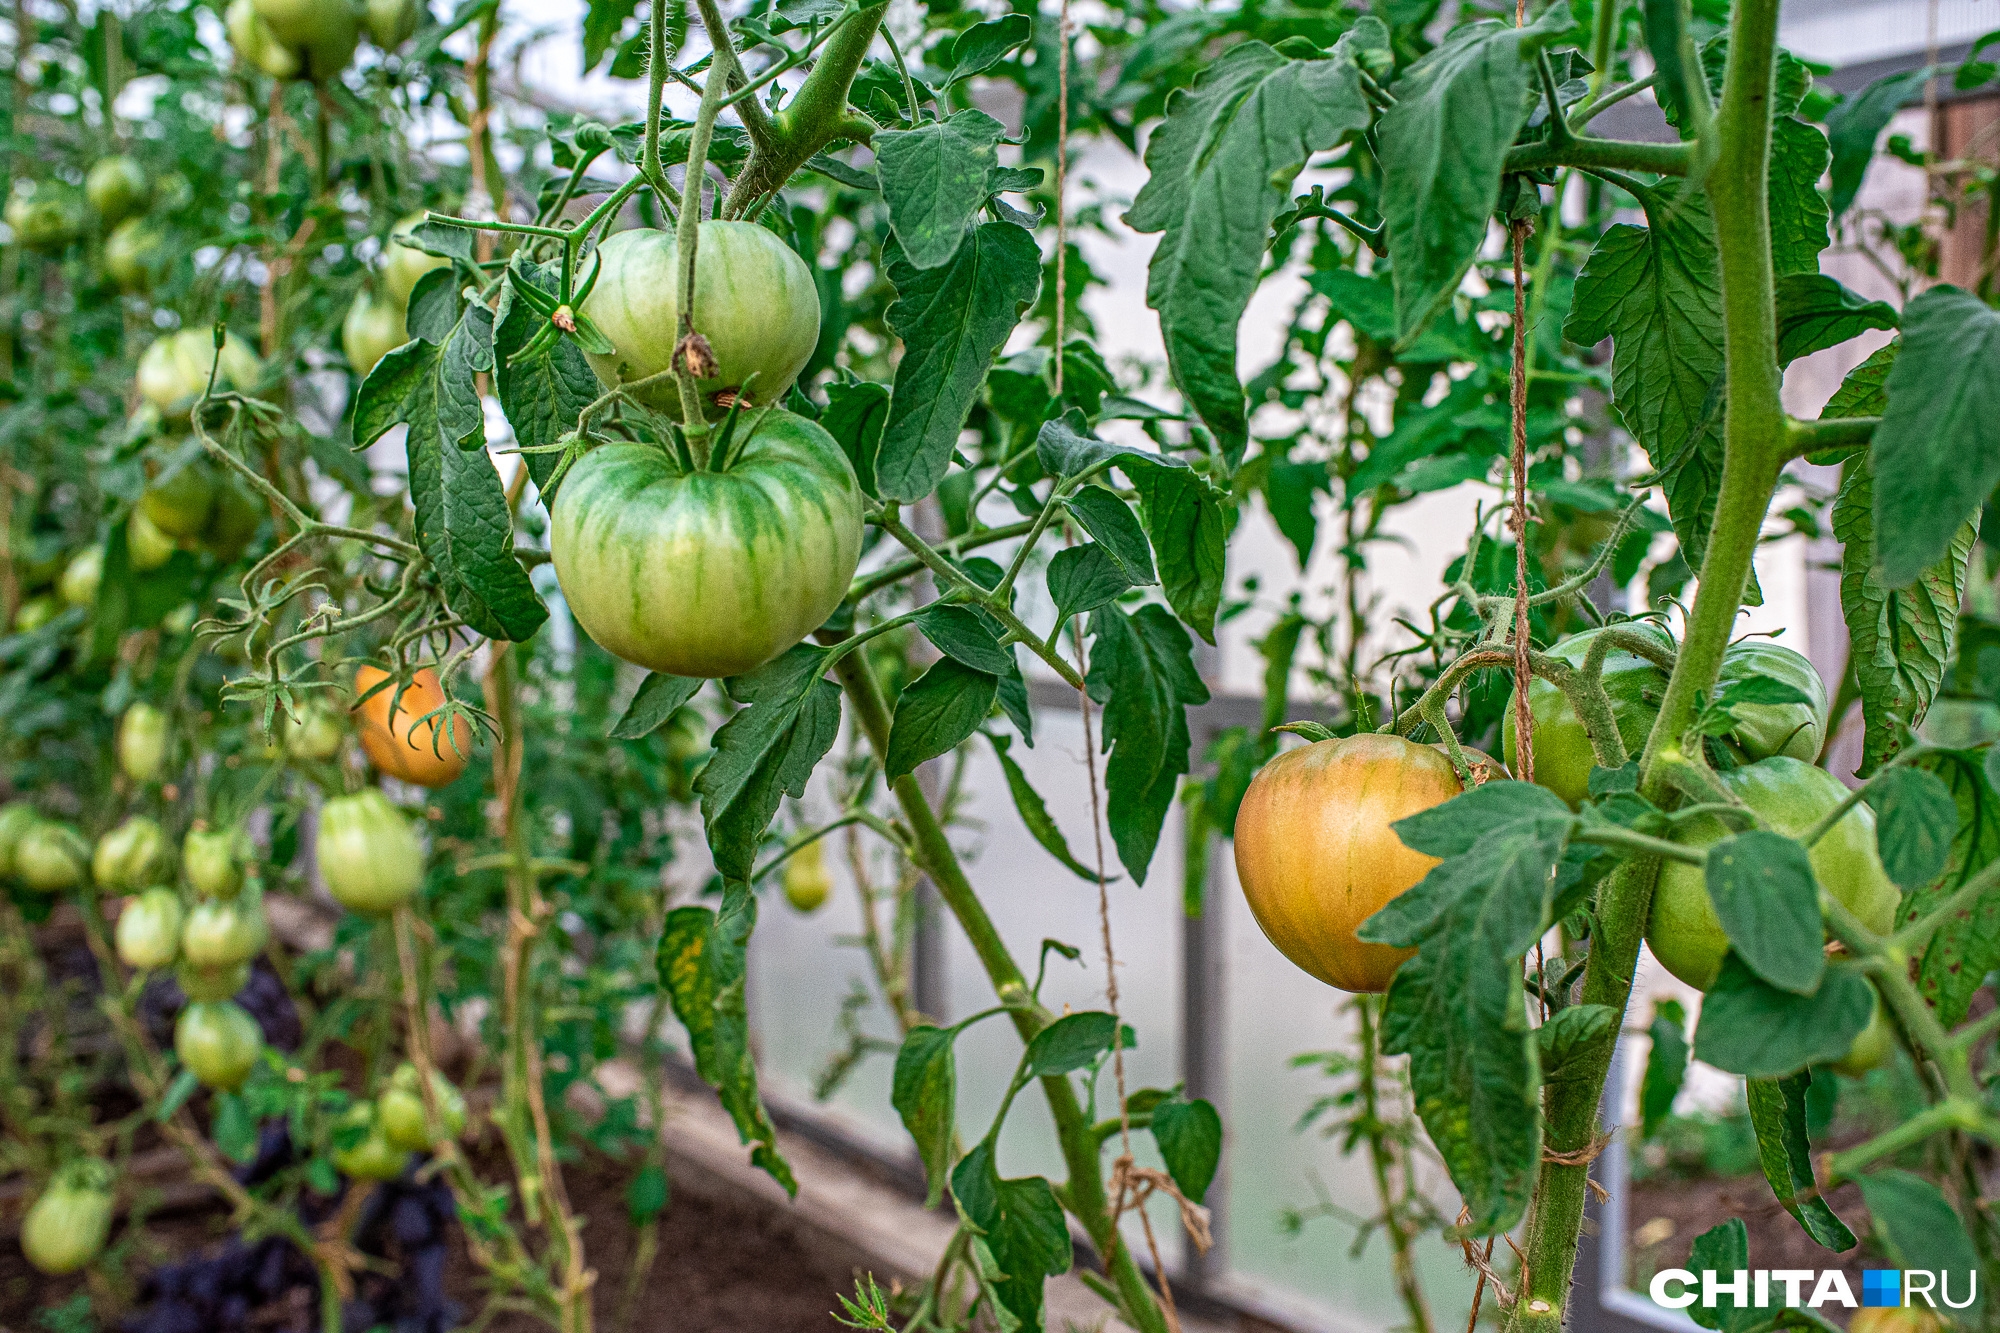 Когда сажать помидоры на рассаду: лучшие, урожайные, крупноплодные сортатоматов для теплицы, низкорослые томаты для теплицы - 12 марта 2023 - 74.ru